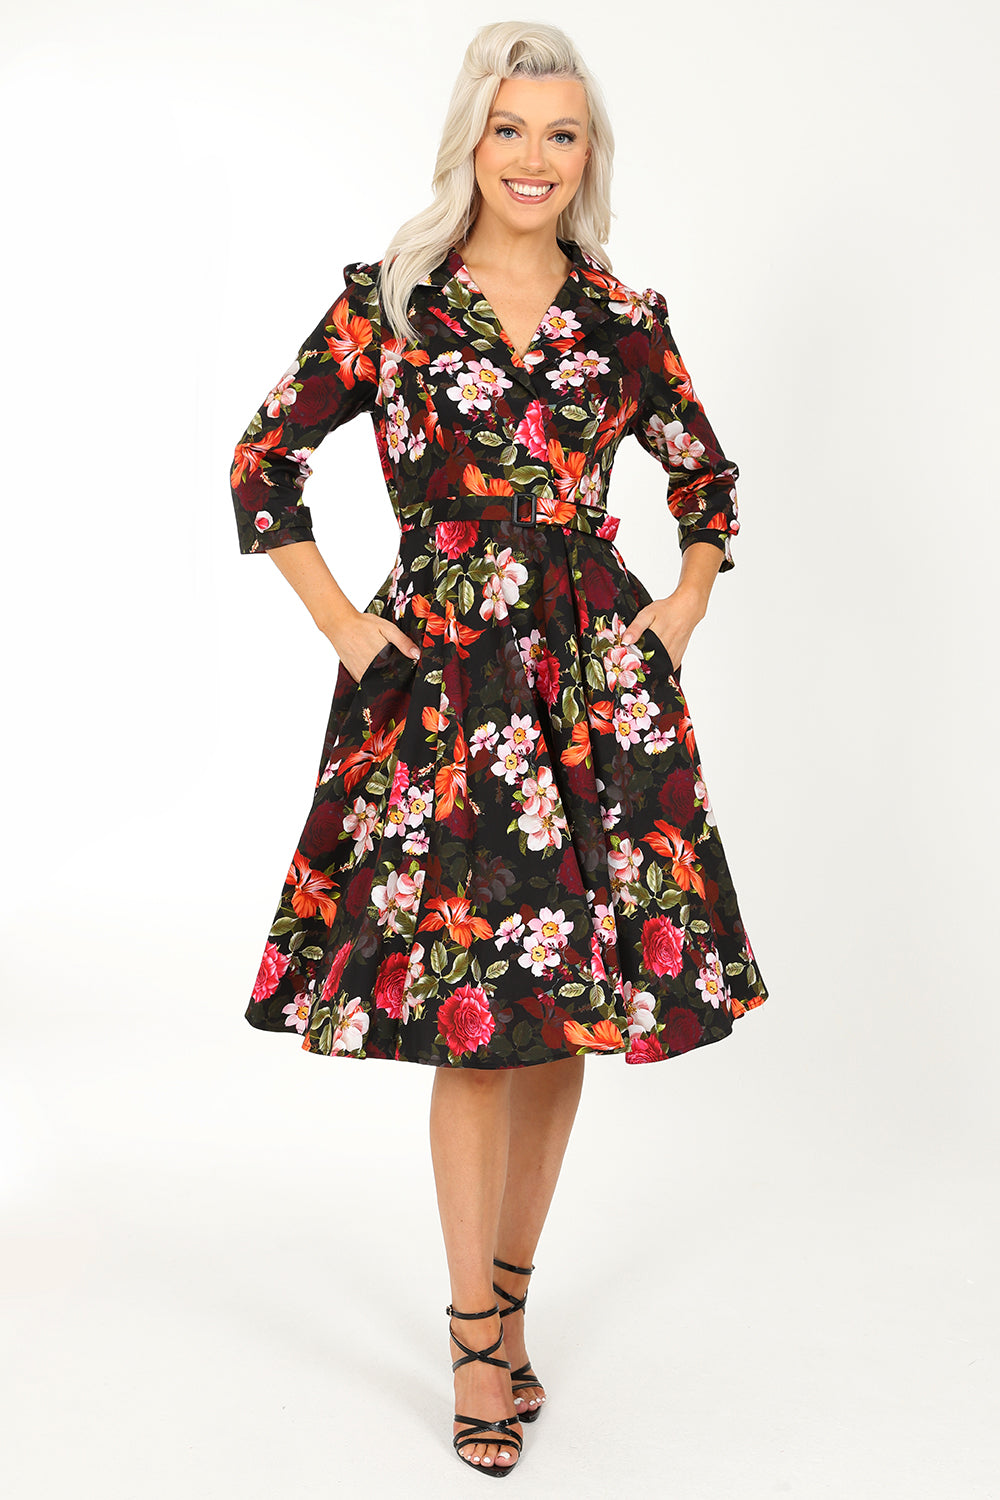 Kali Herbstblumen Vintage Kleid